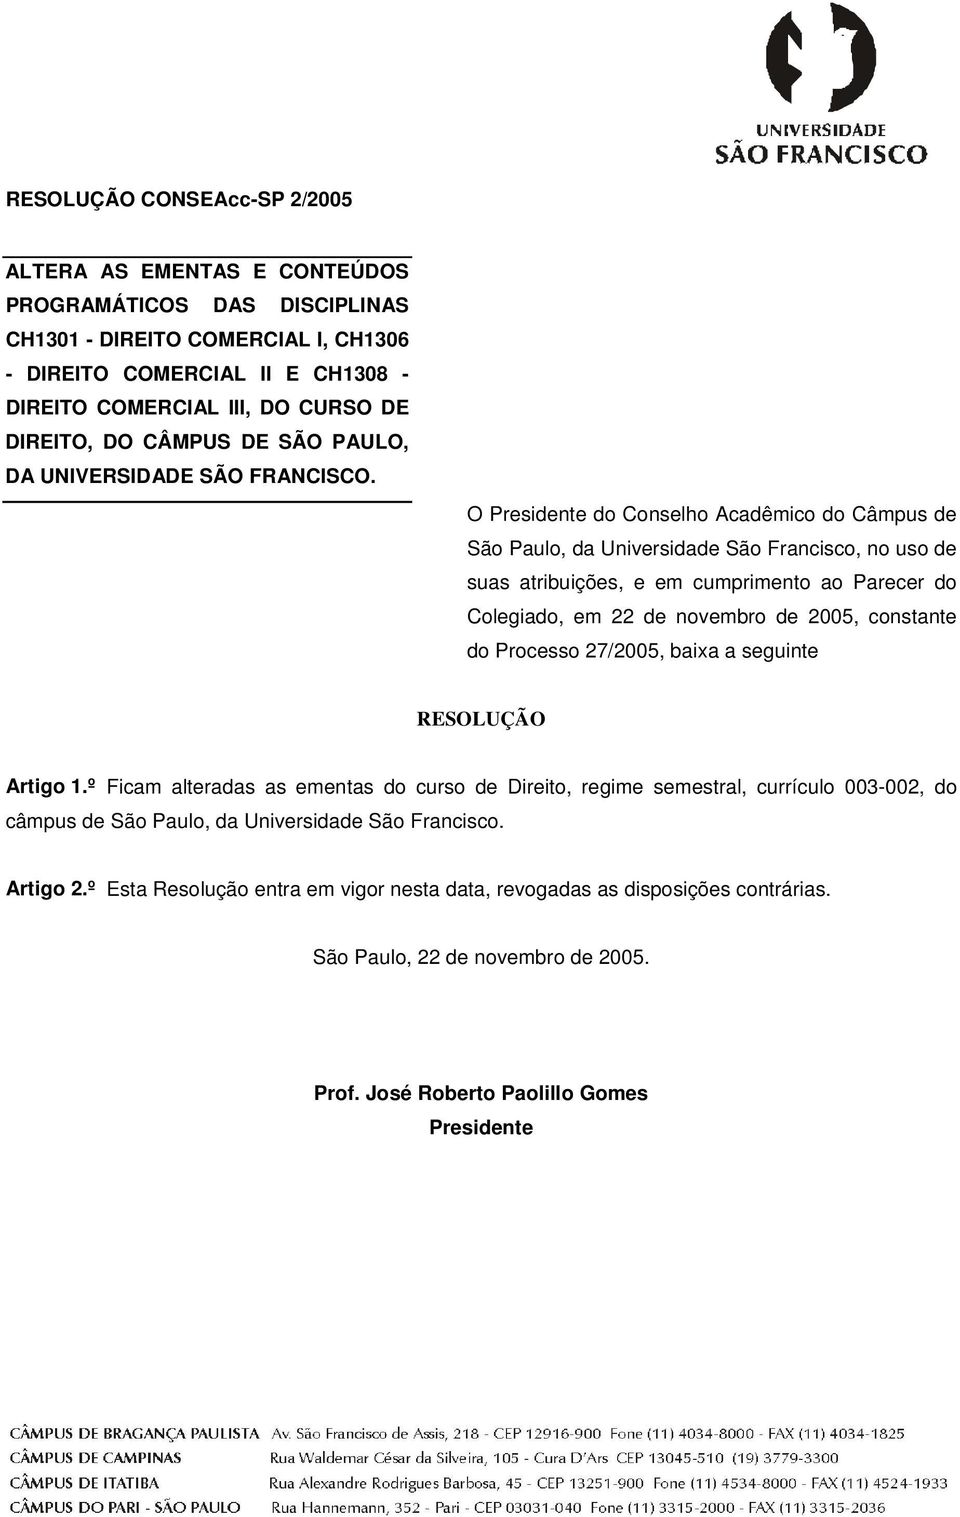 O Presidente do Conselho Acadêmico do Câmpus de São Paulo, da Universidade São Francisco, no uso de suas atribuições, e em cumprimento ao Parecer do Colegiado, em 22 de novembro de 2005, constante